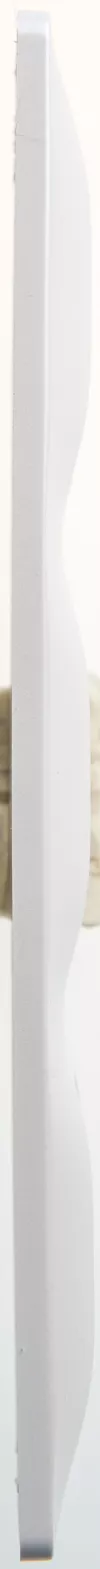 Рамка Schneider Electric Glossa на 3 поста, вертикальная, перламутр